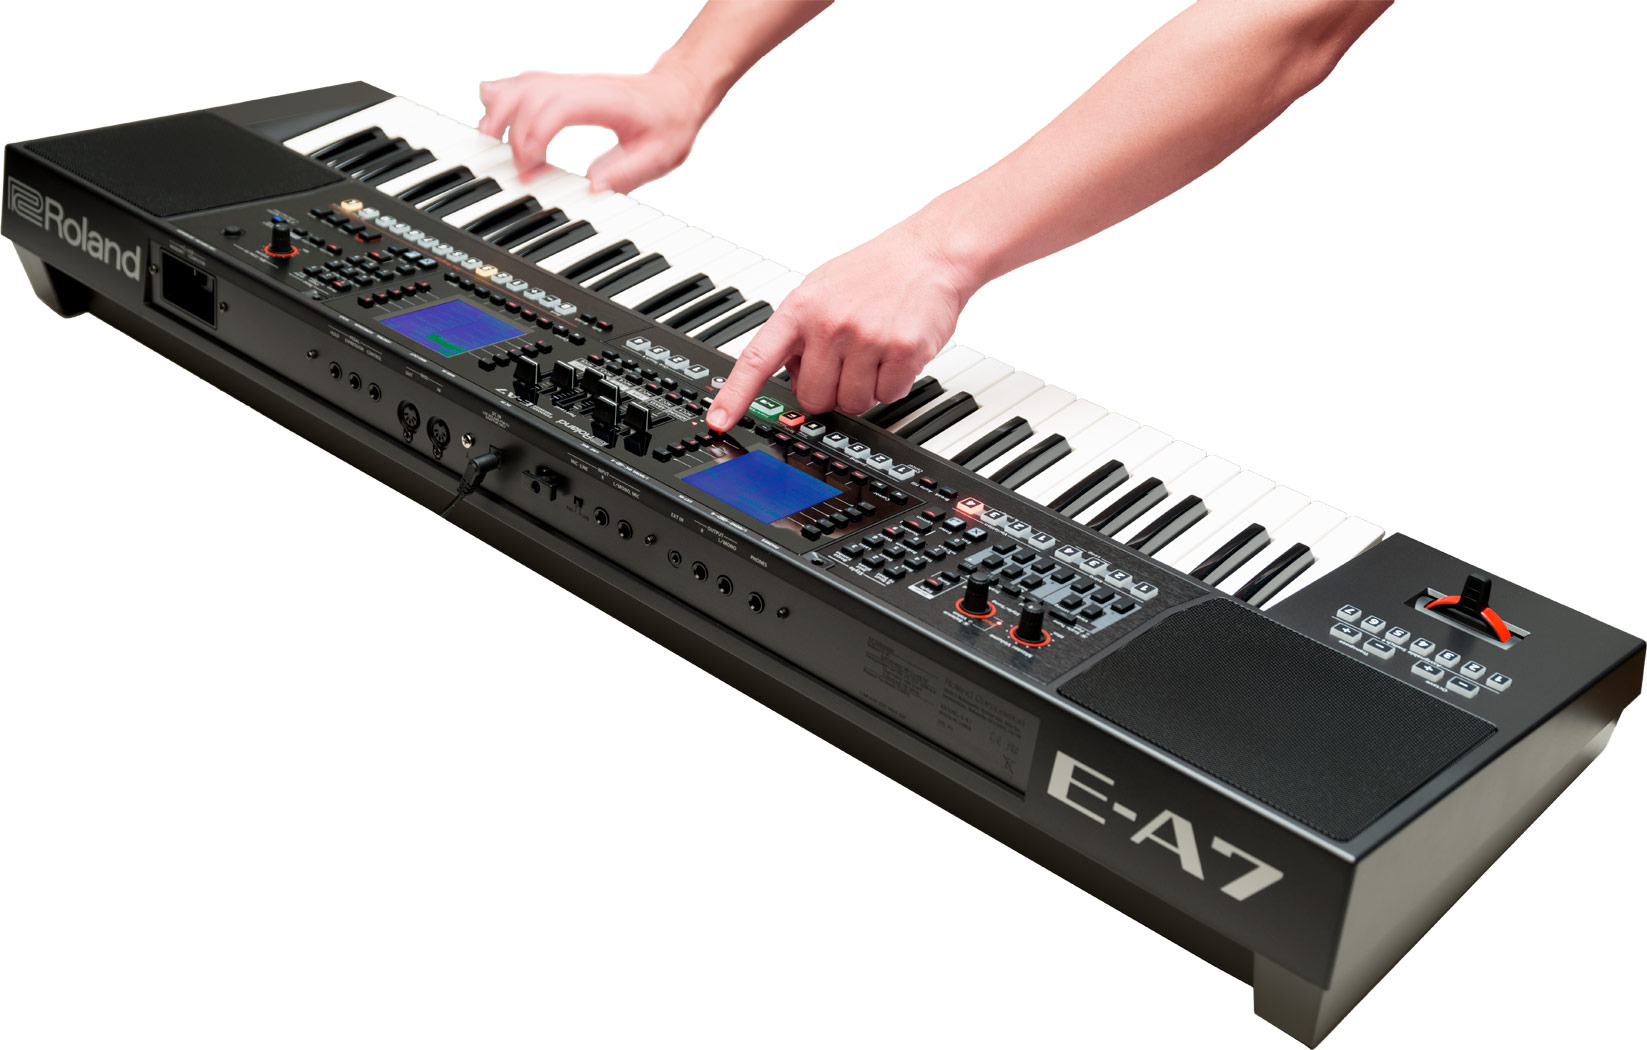 Đàn Organ Roland E-A7 là dòng mới nhất với 2 màn hình LCD, 156 nút chuyên dụng, 1.500 âm sắc, 600 điệu đệm và chỉ nặng 7,9kg, bộ nhớ 128 Mb lưu trữ tới 512 Sample